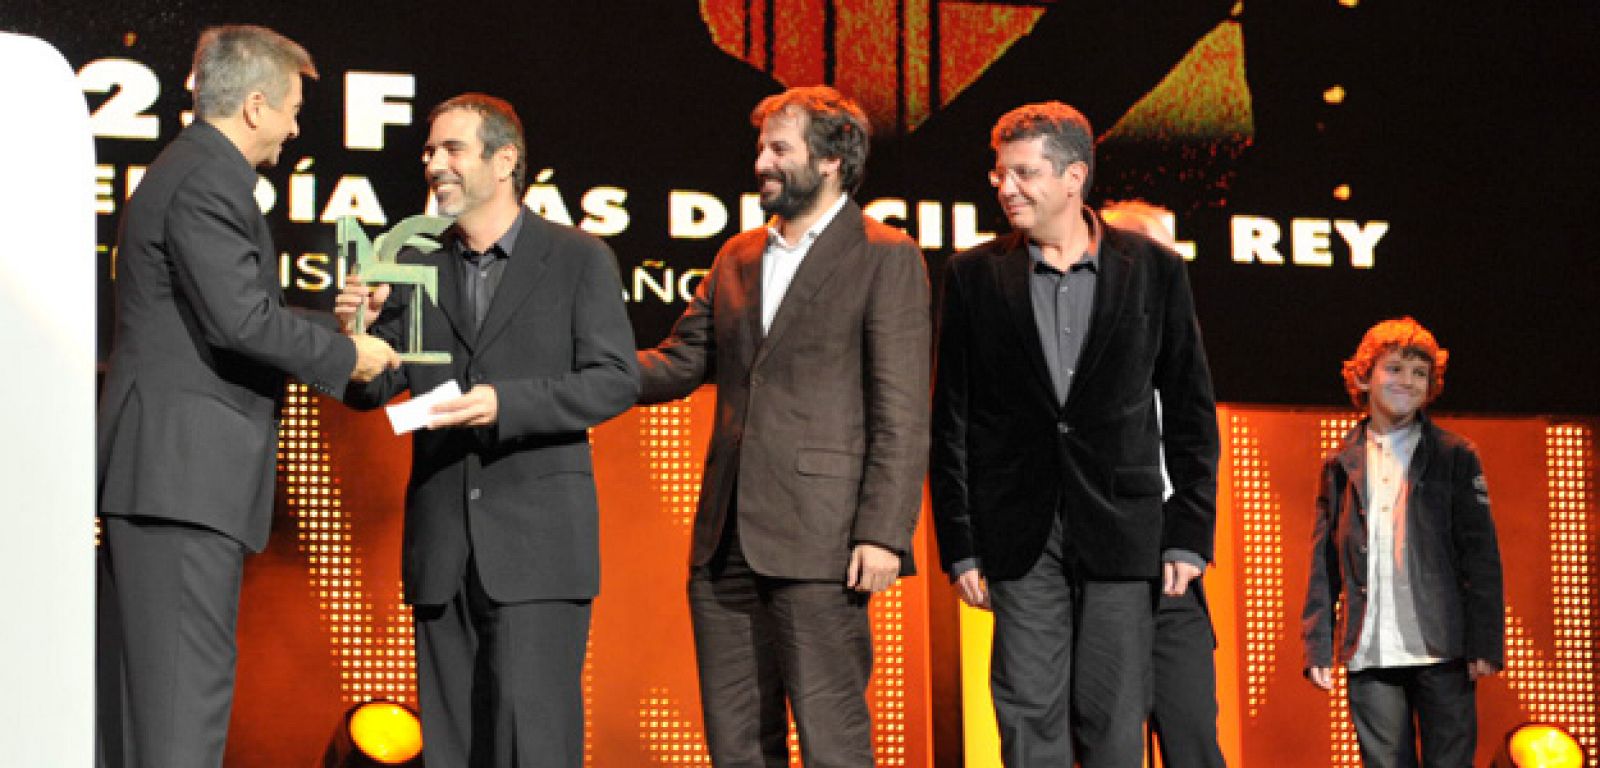 Carles Francino entregó el premio a "23-F, el día más difícil del Rey"